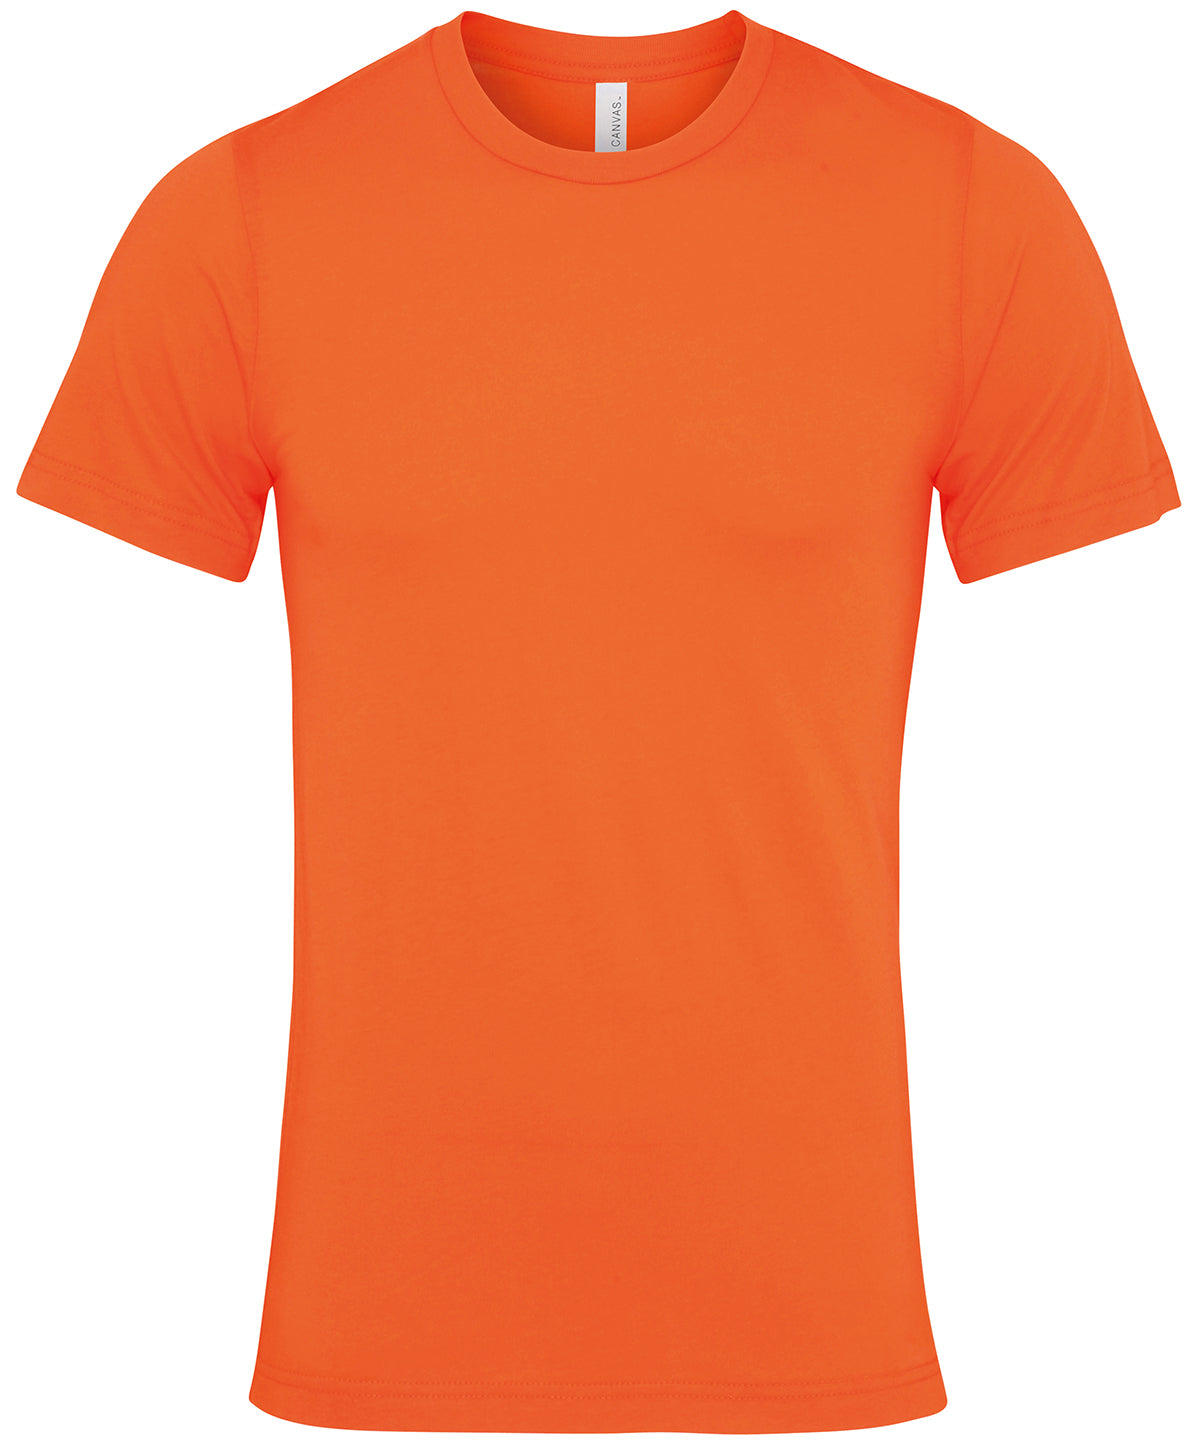 Bella Canvas Unisex Jersey crew neck t-shirt Orange